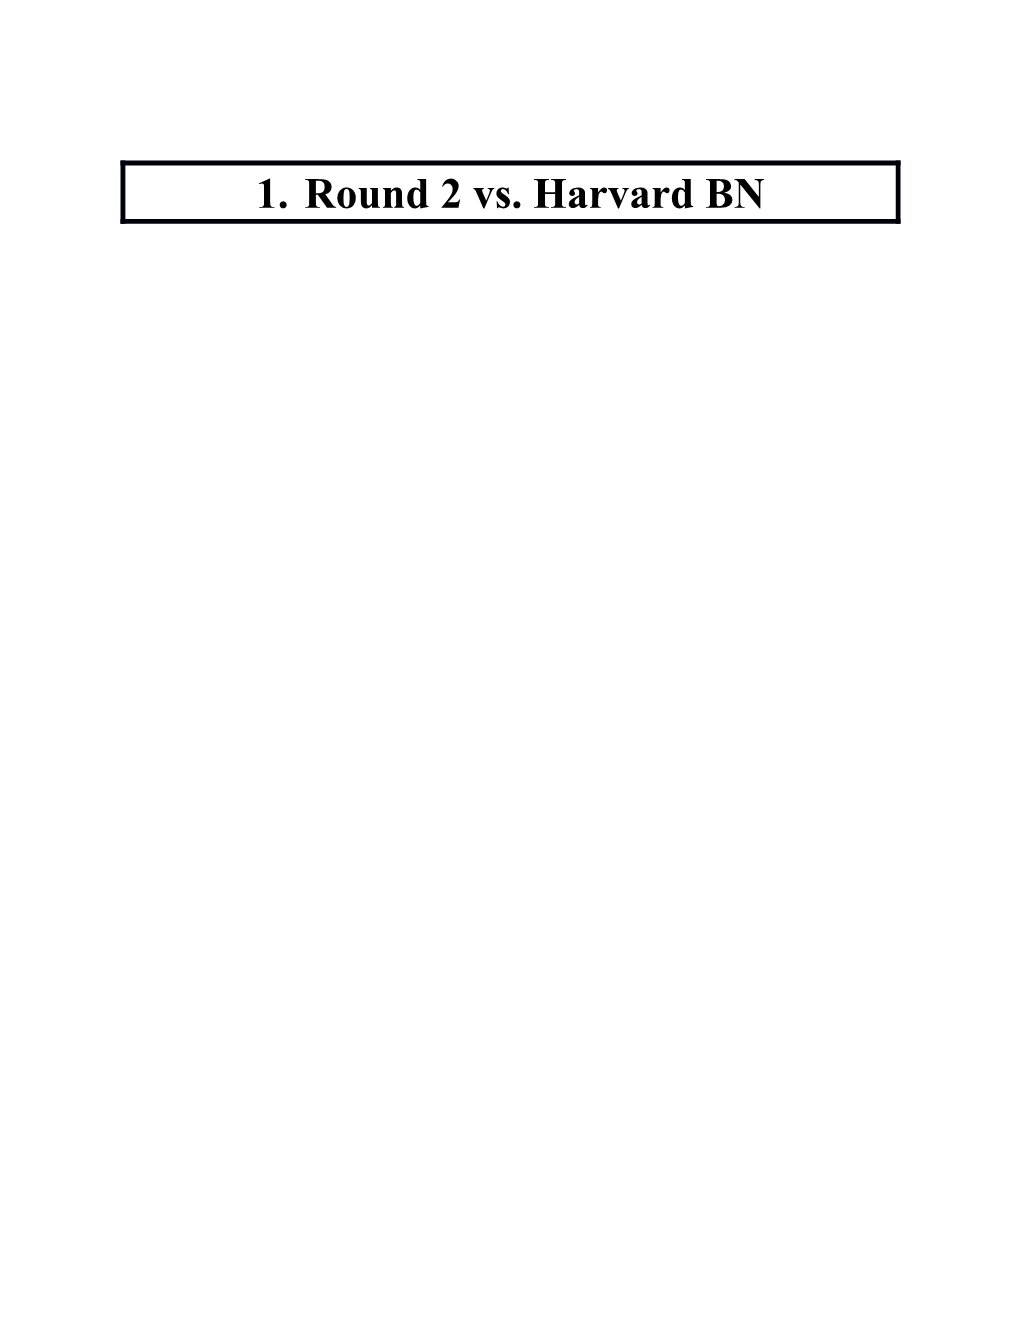 Round 2 Vs. Harvard BN